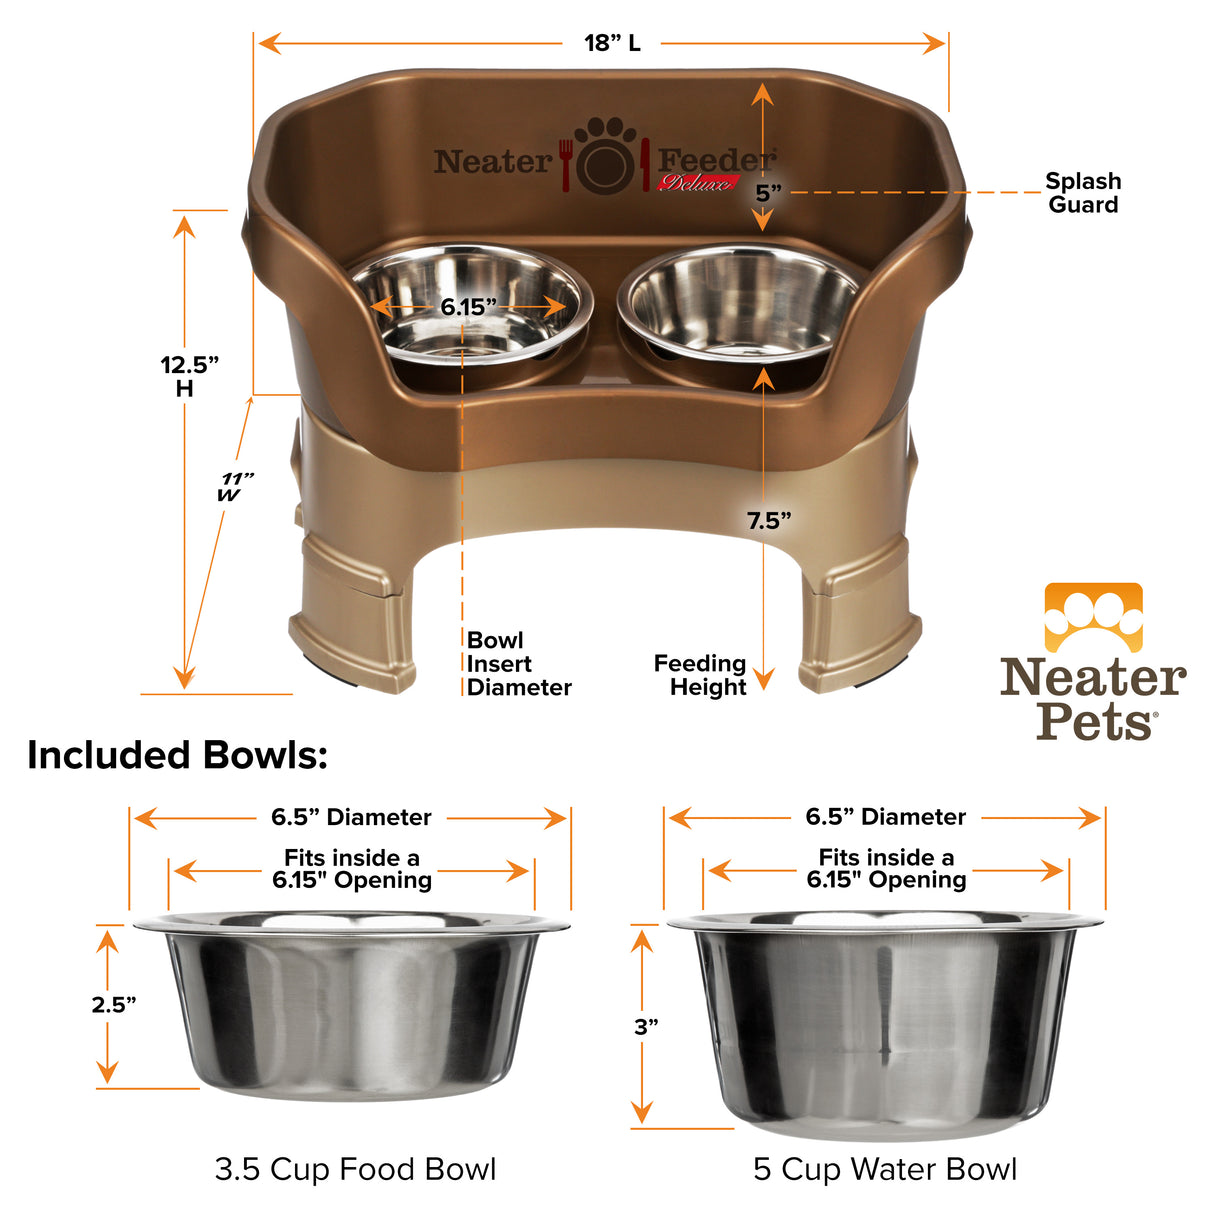 Medium dog feeder and bowl dimensions